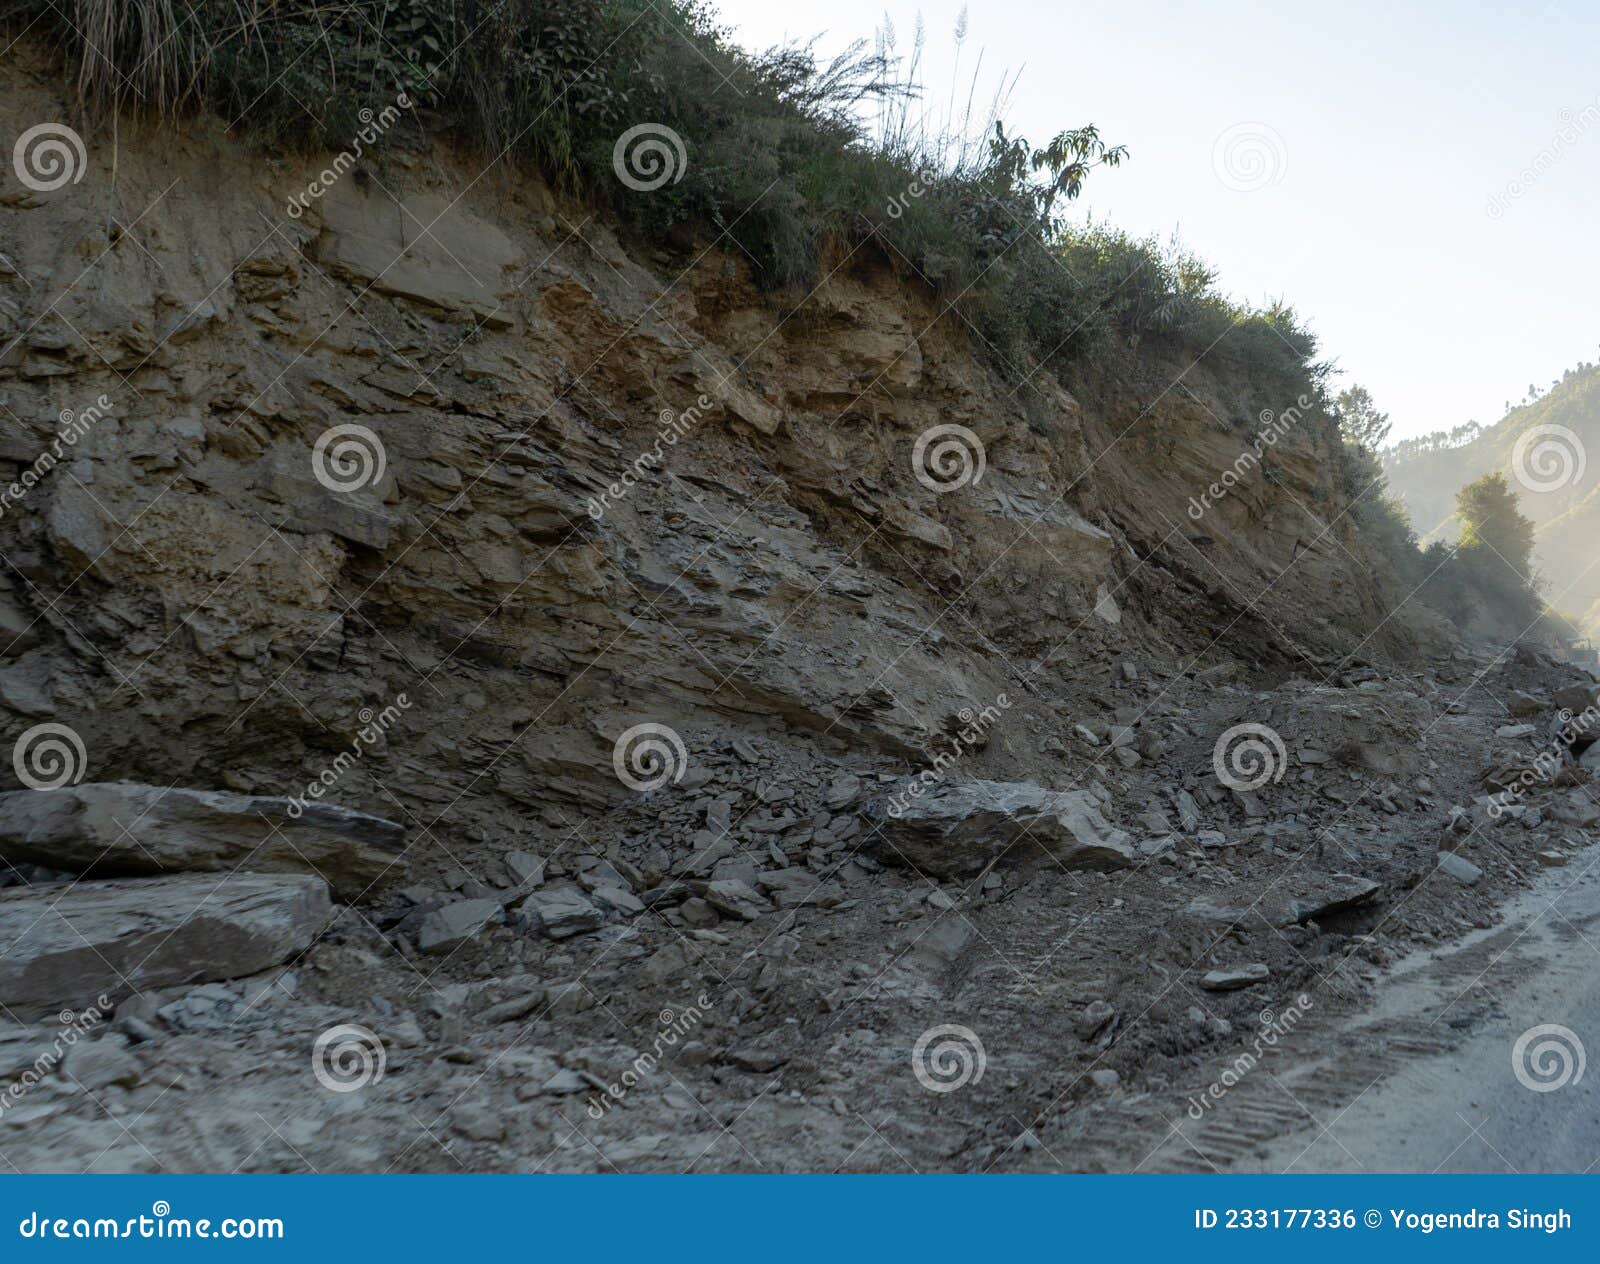 HD landslides wallpapers | Peakpx